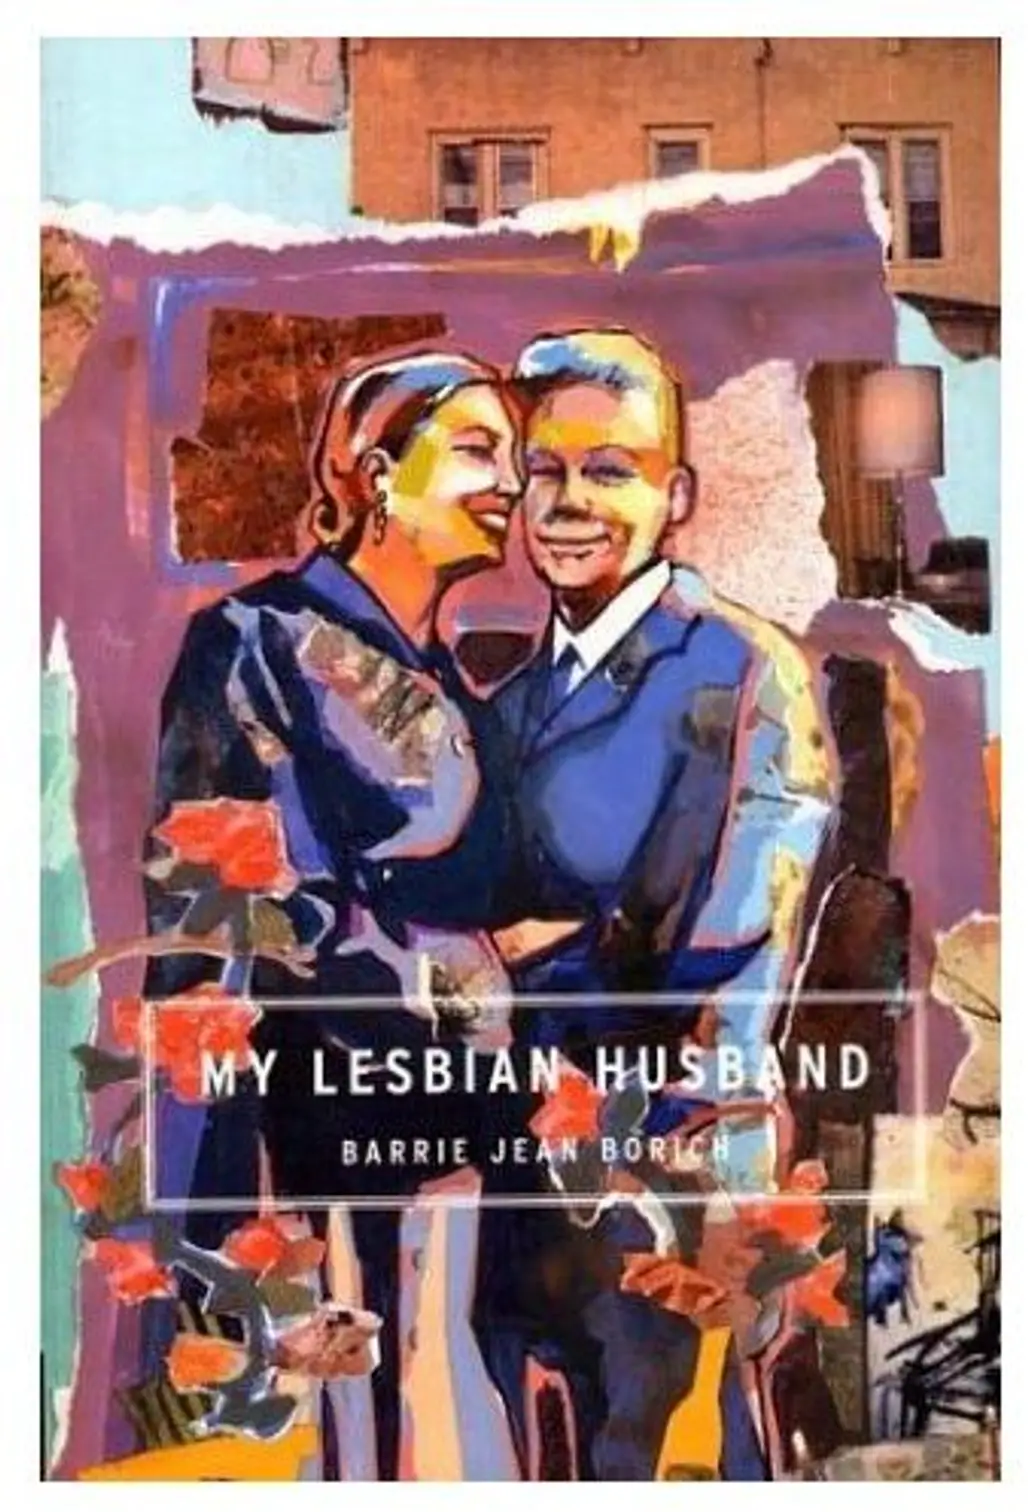 My Lesbian Husband by Barrie Jean Borich